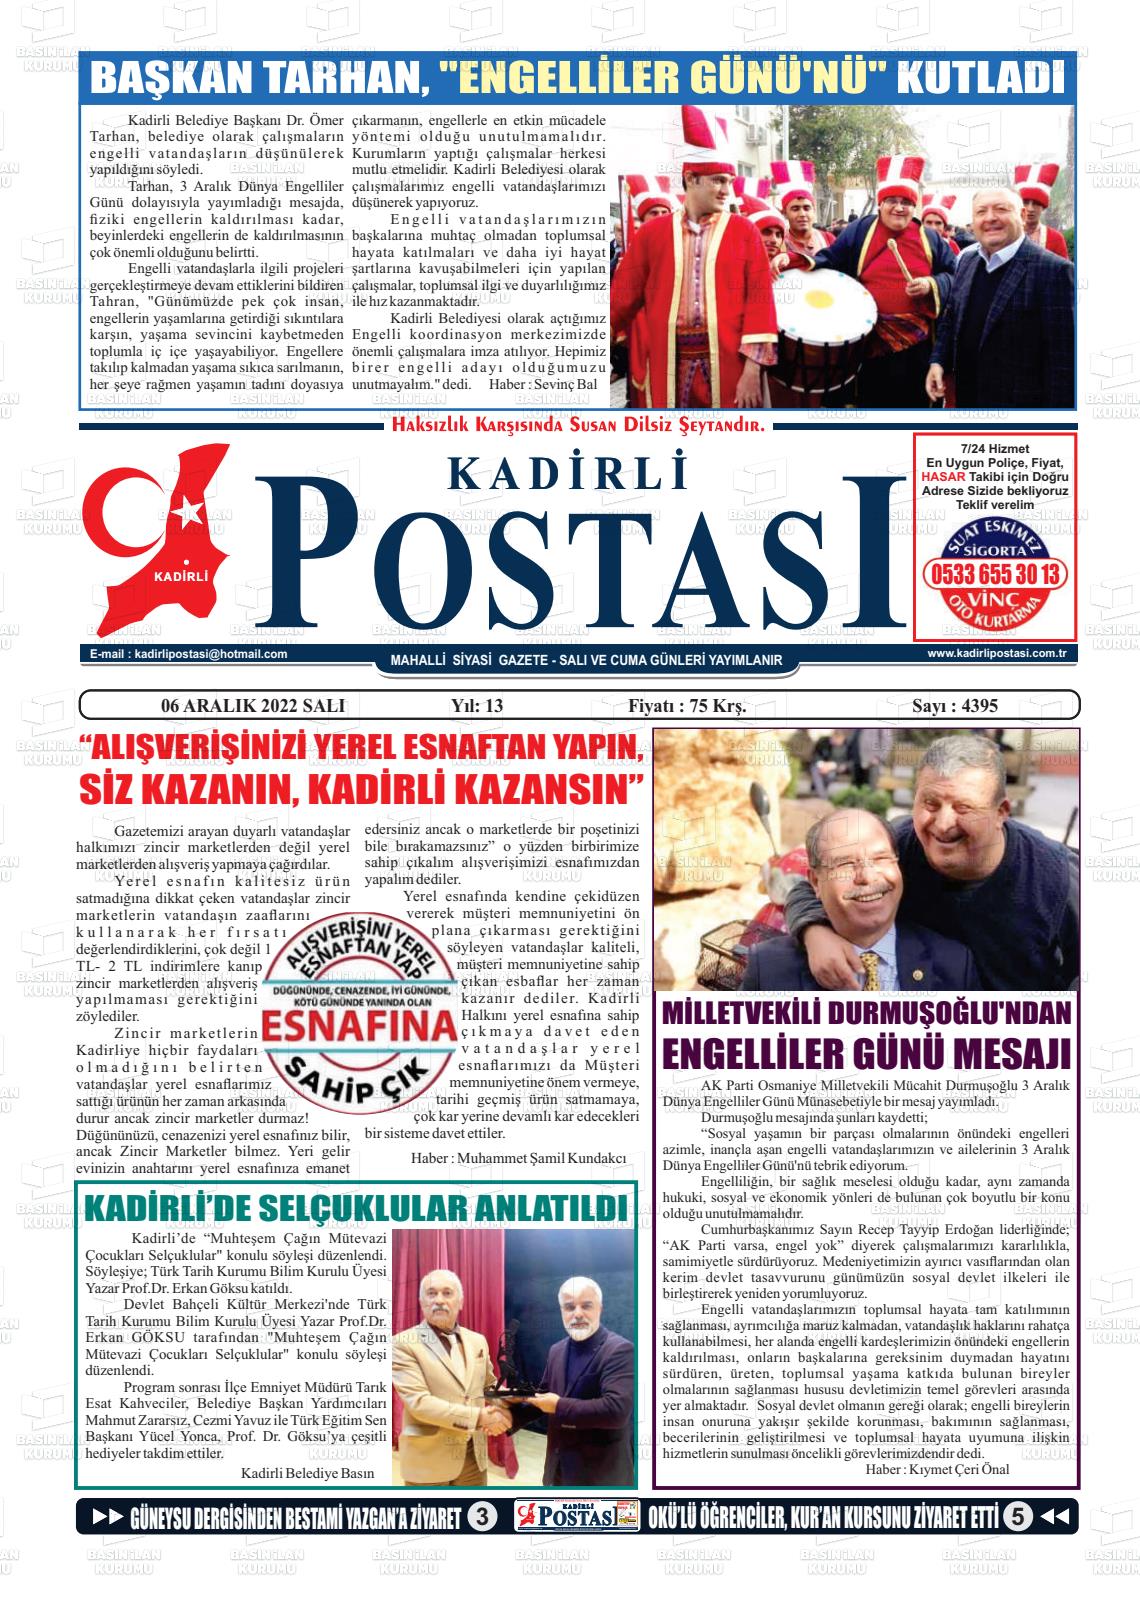 06 Aralık 2022 Kadirli Postası Gazete Manşeti